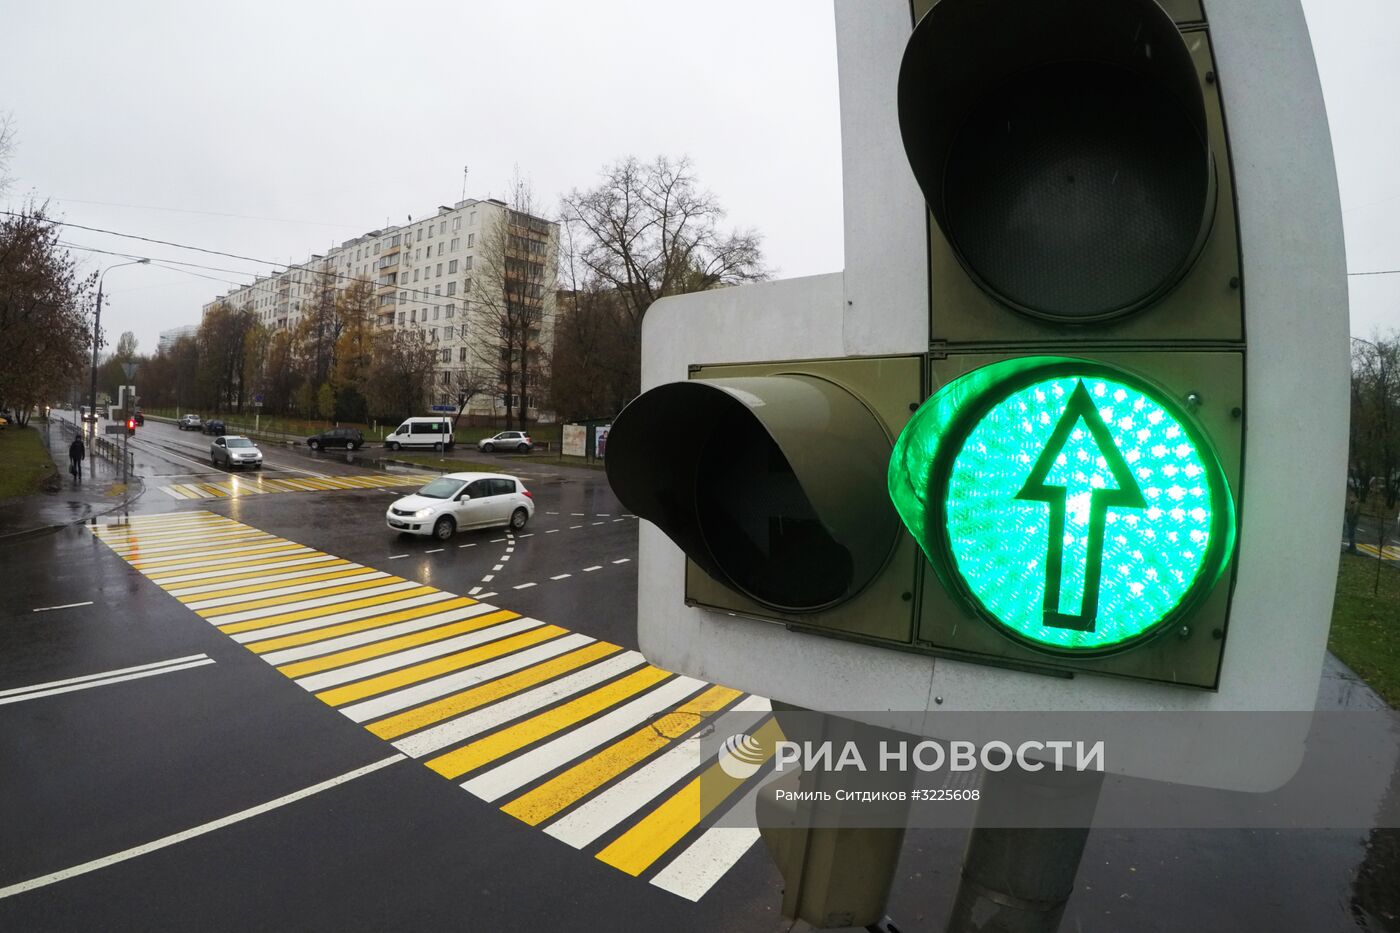 Светофор, установленный в рамках российско-японского проекта по внедрению системы светофорного регулирования